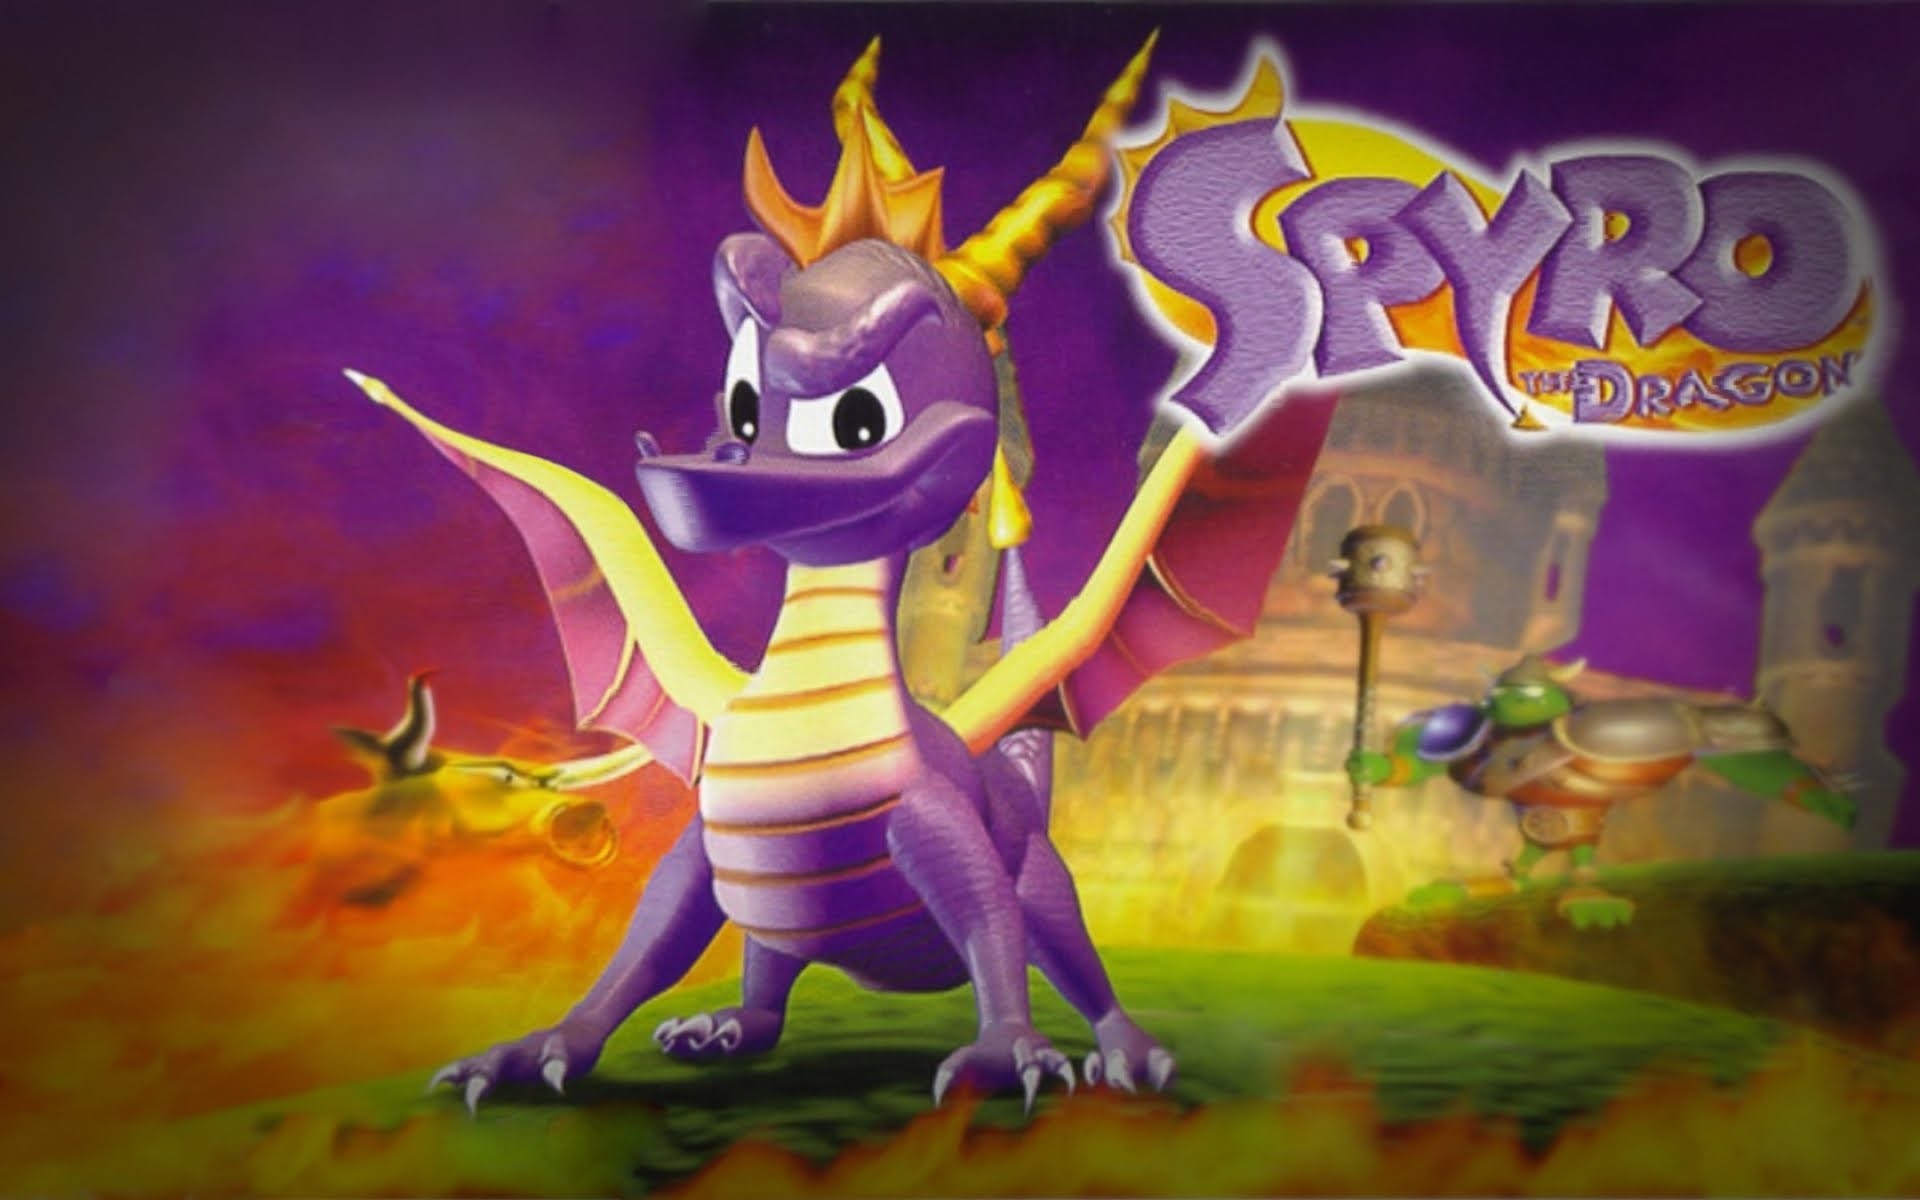 Outro rumor?! Descoberto mais um indício de novo jogo do Spyro the